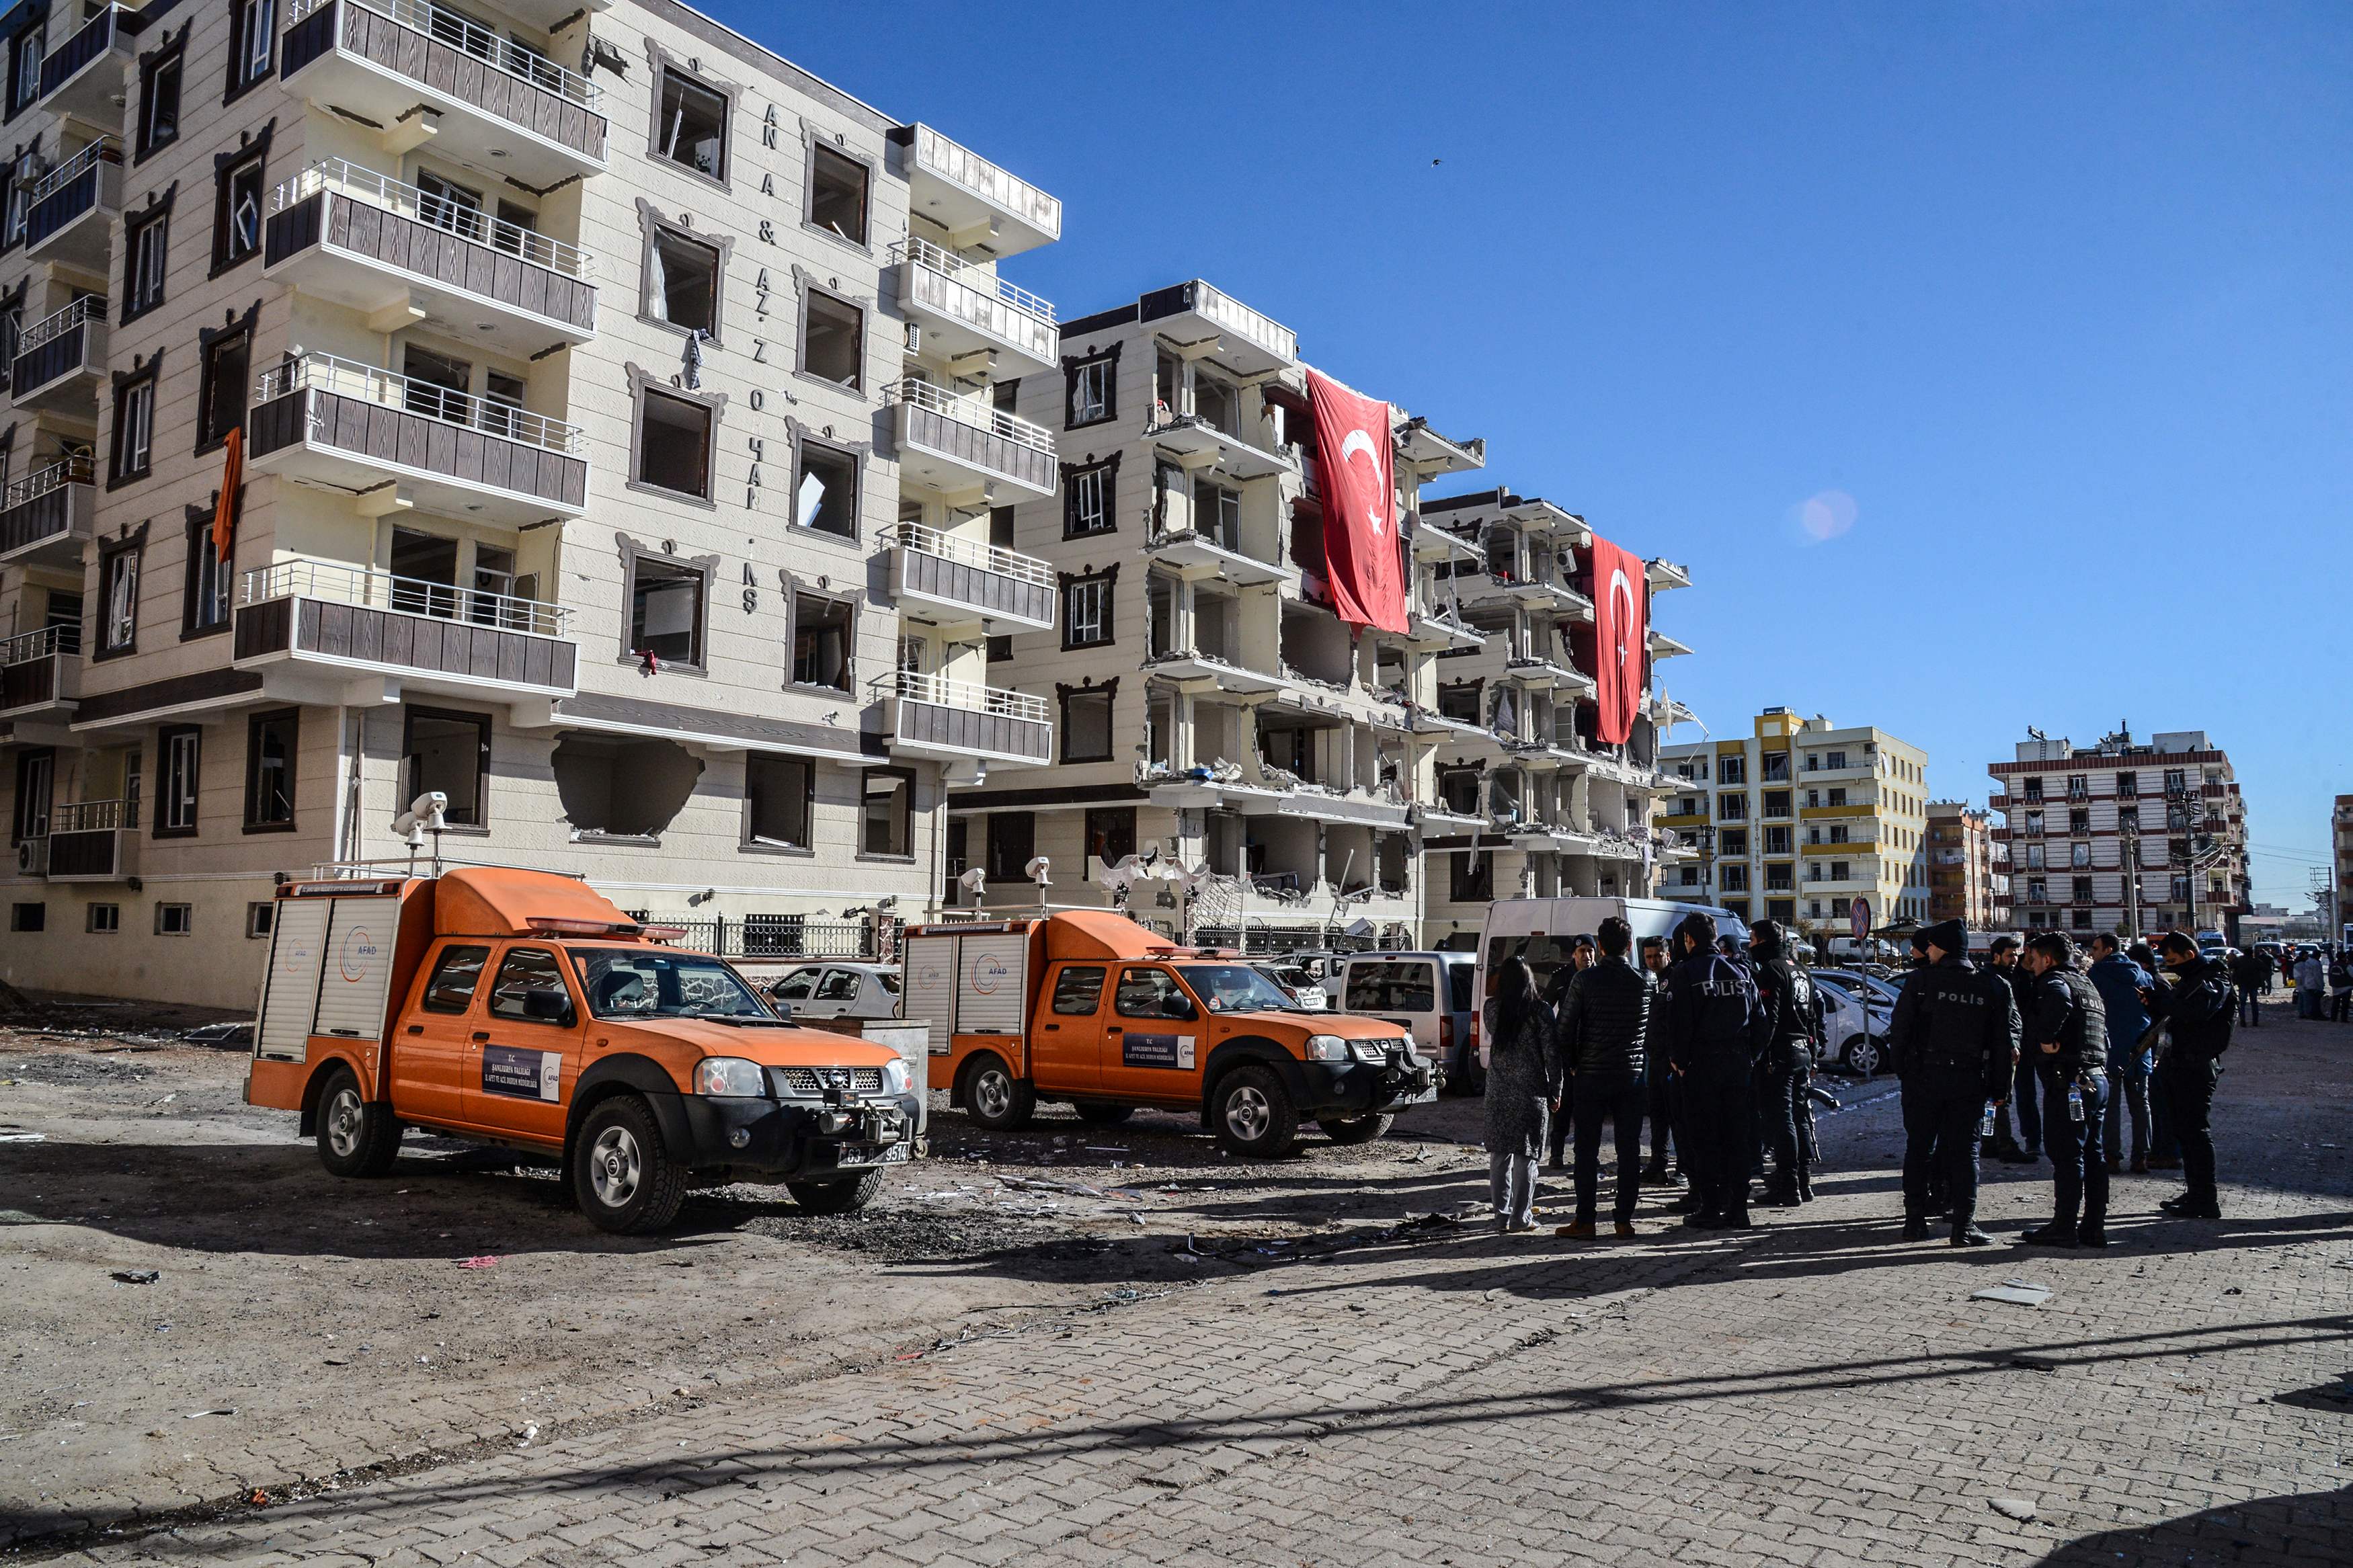 سيارات الإسعاف والشرطة تصطف فى موقع الانفجار بتركيا